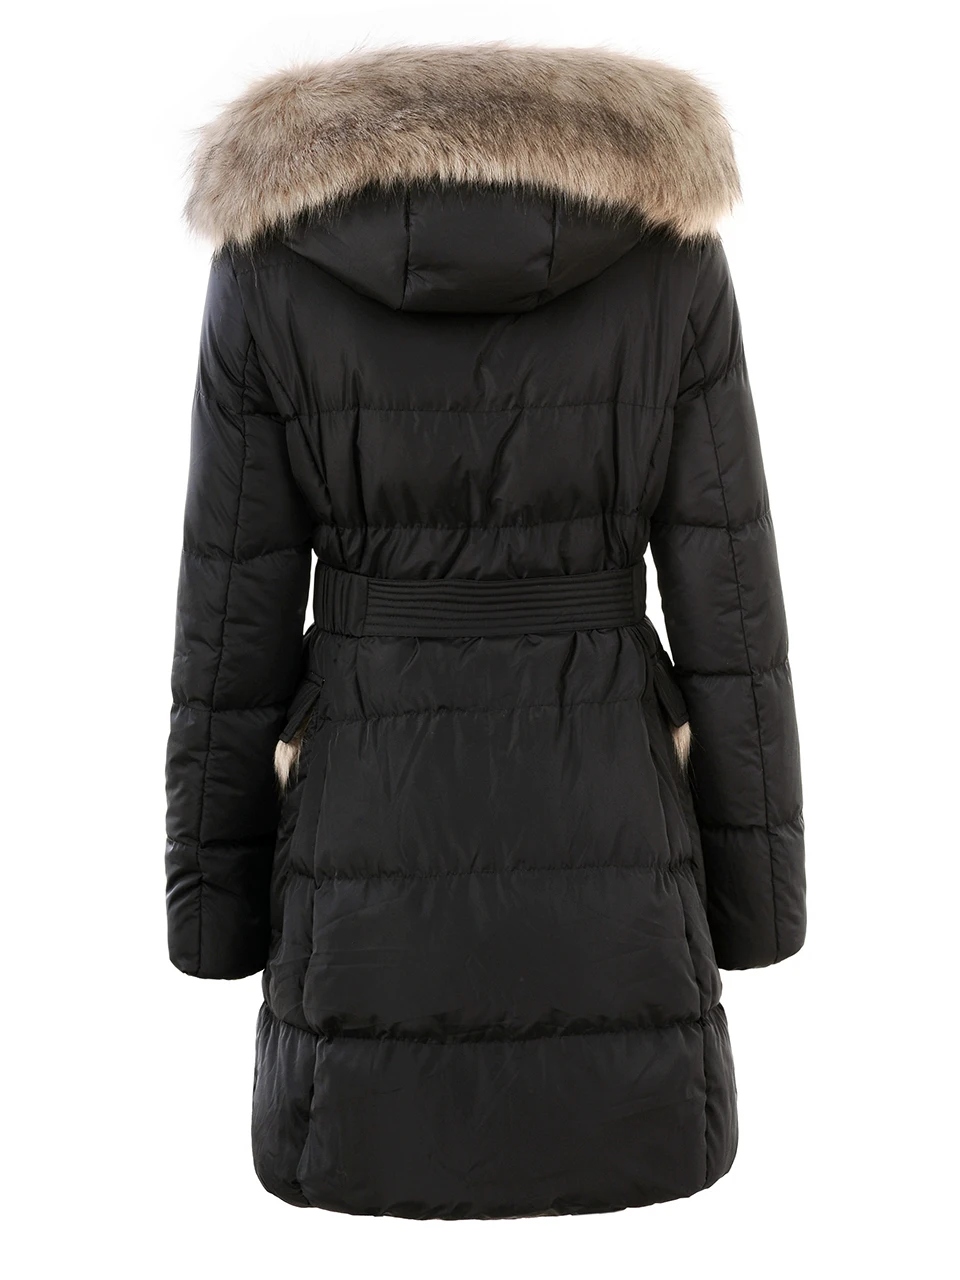 GLO-STORY женский зимний Черный пуховик Пальто повседневные женские парки теплая одежда Длинная женская зимняя парка с капюшоном пальто WMA-3262